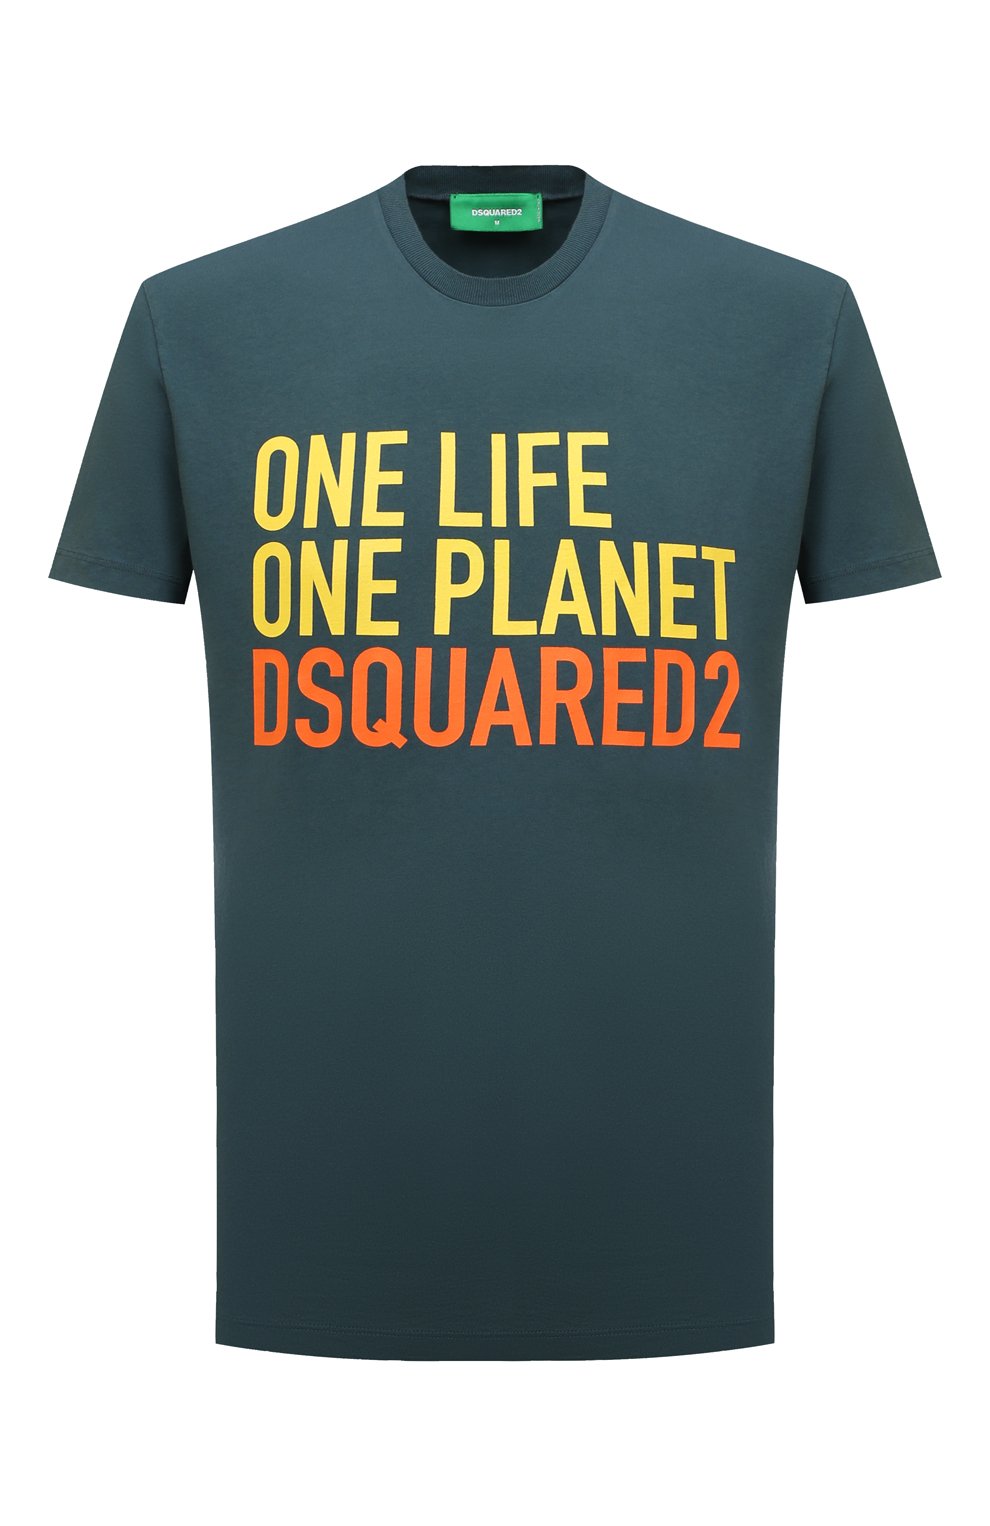 Футболки Dsquared2, Хлопковая футболка Dsquared2, Италия, Зелёный, Хлопок: 100%;, 13013419  - купить